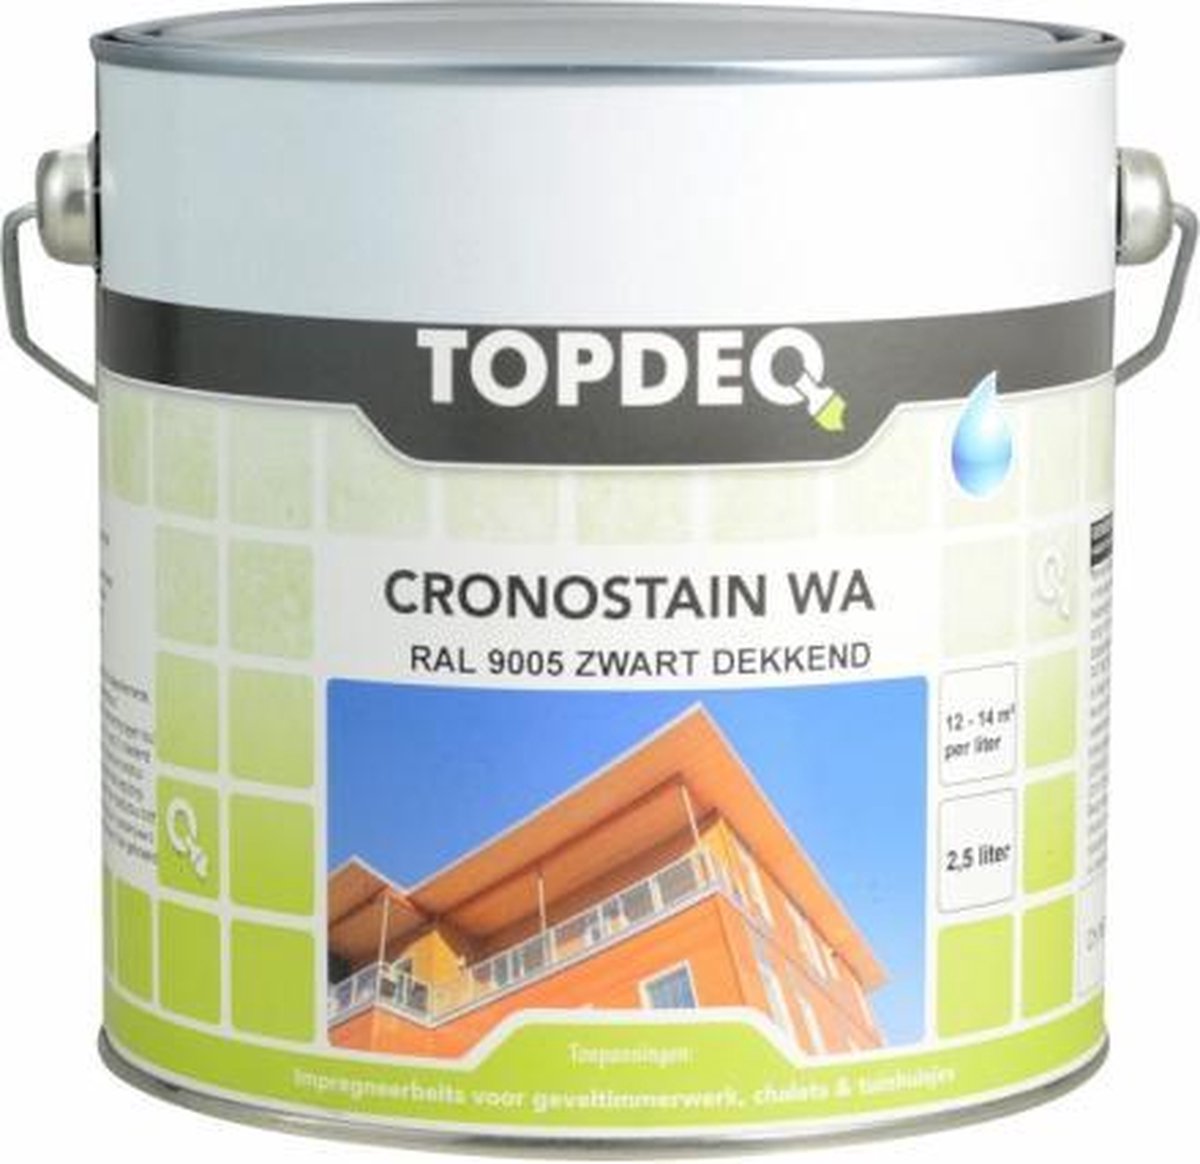 Topdeq Cronostain WA - Ral 9005 Zwart 1 Liter